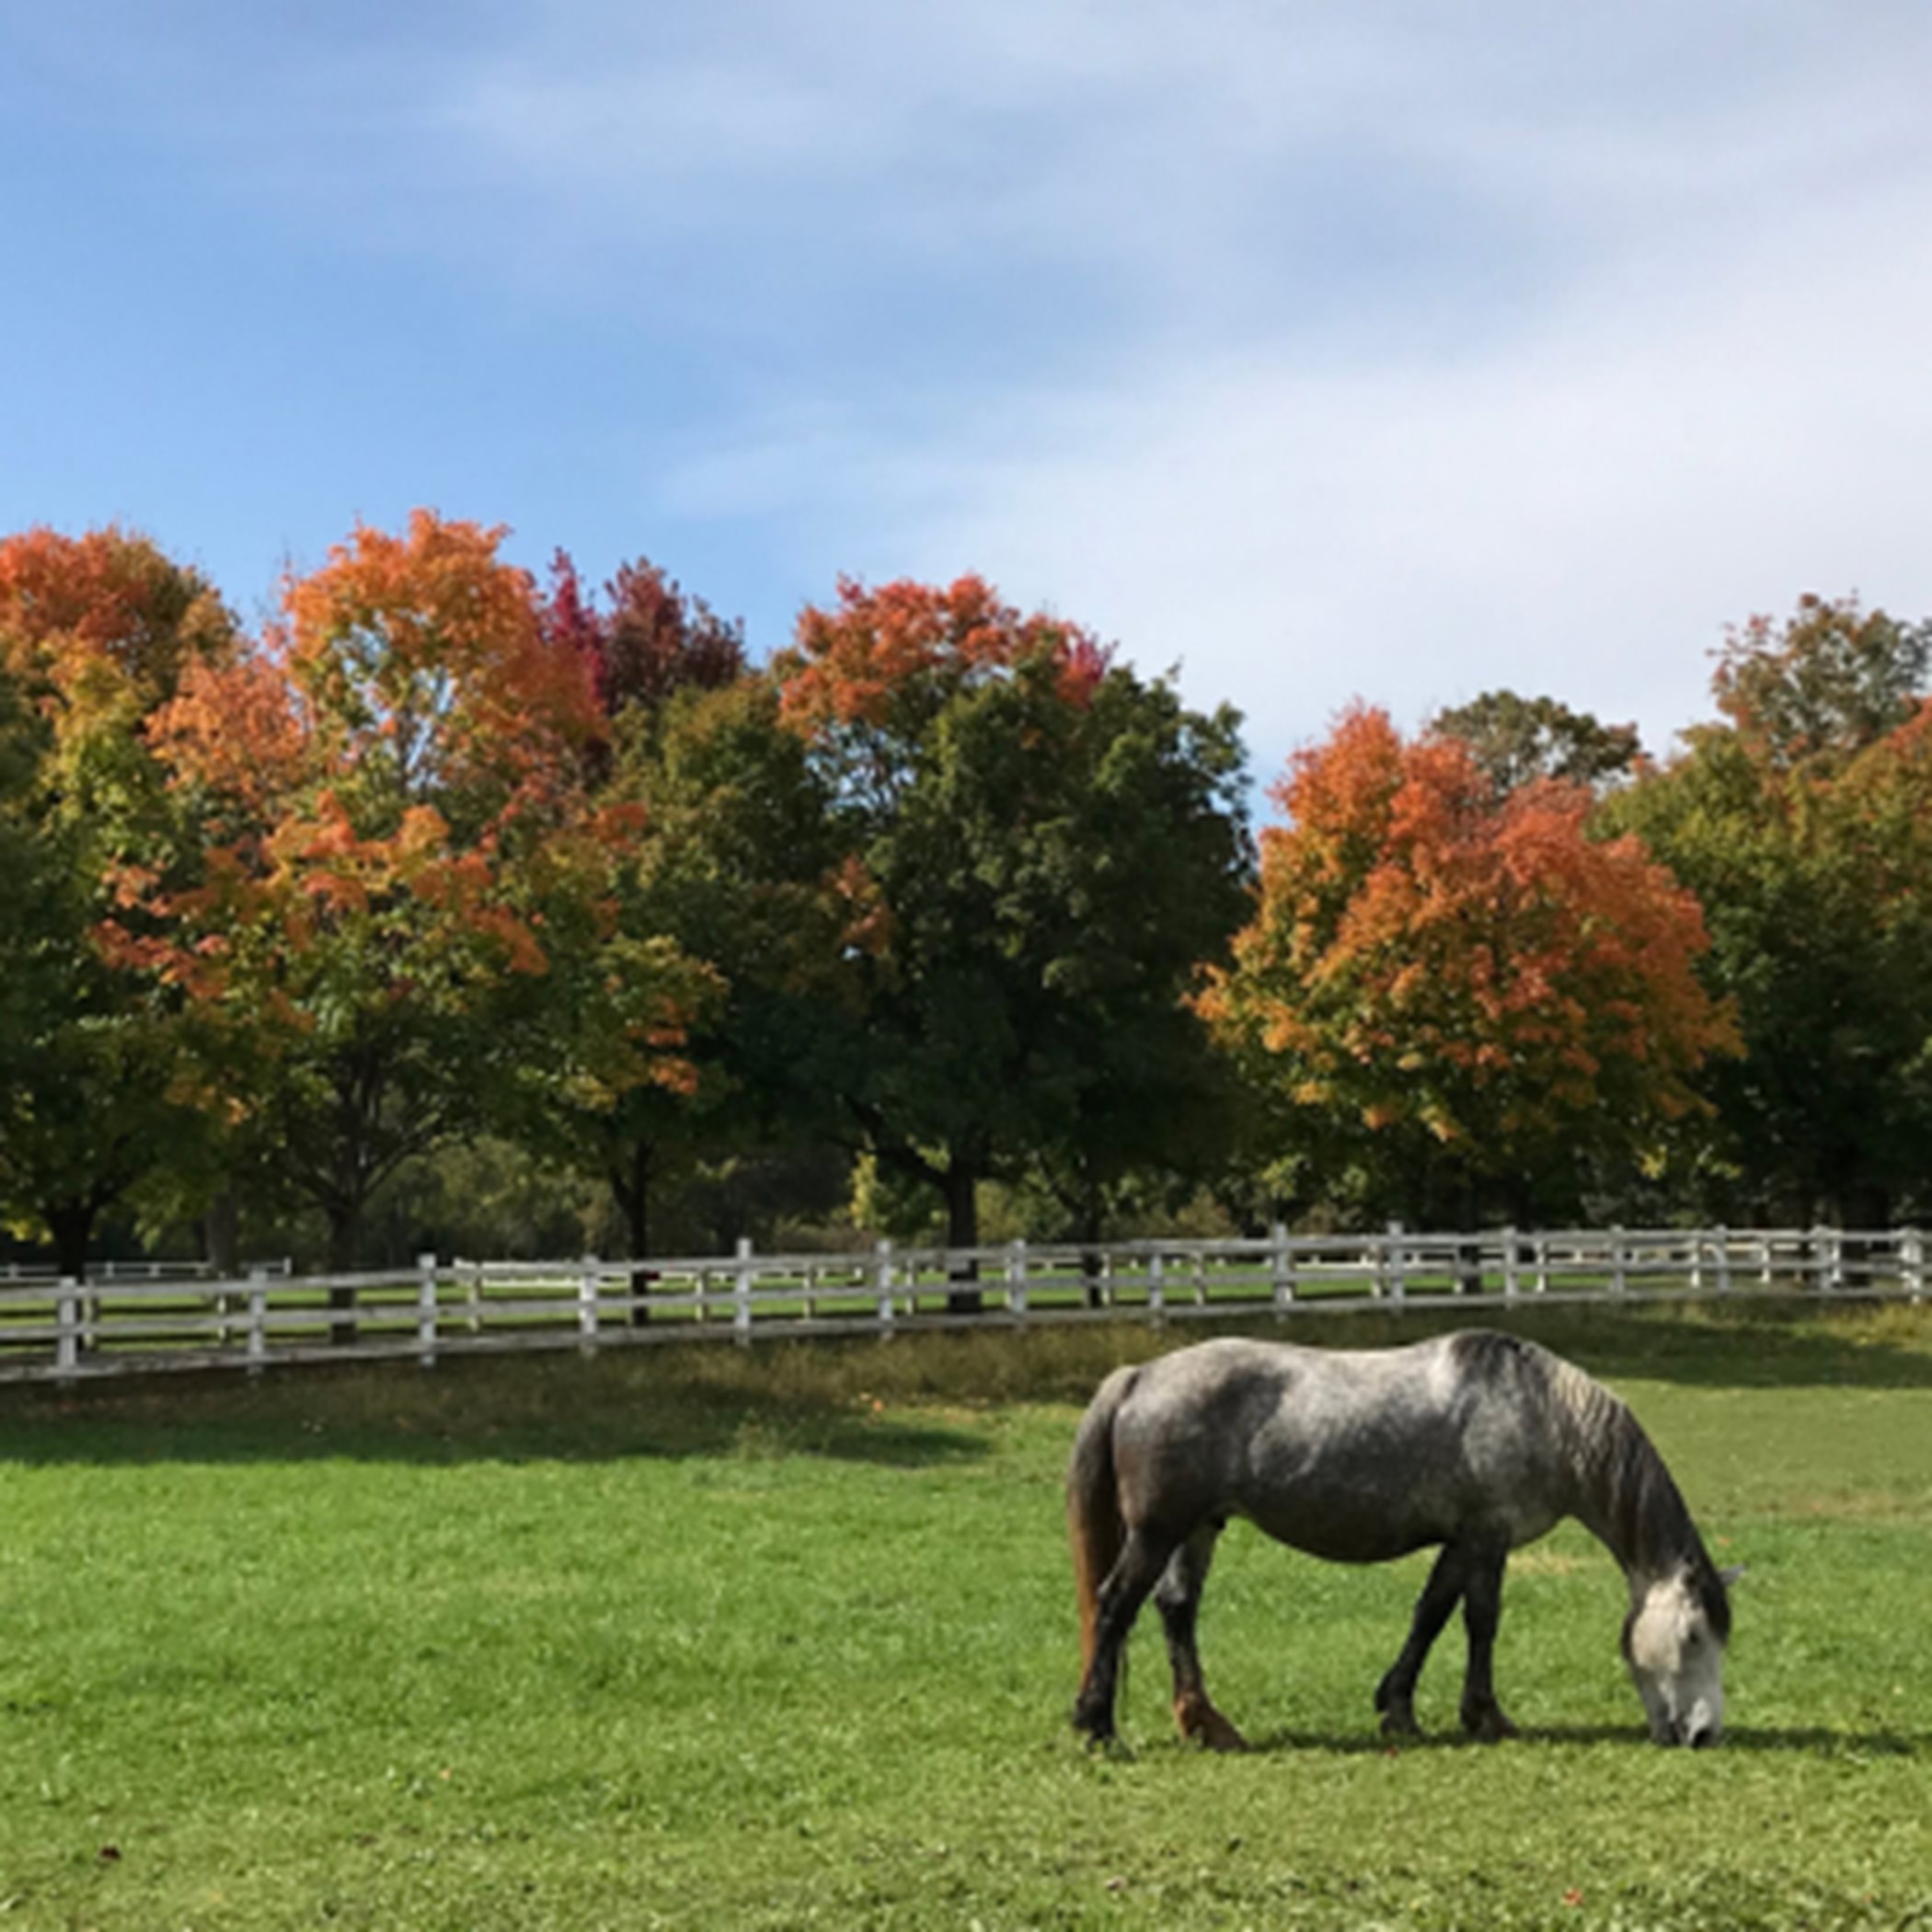 Horse Grazing in a field